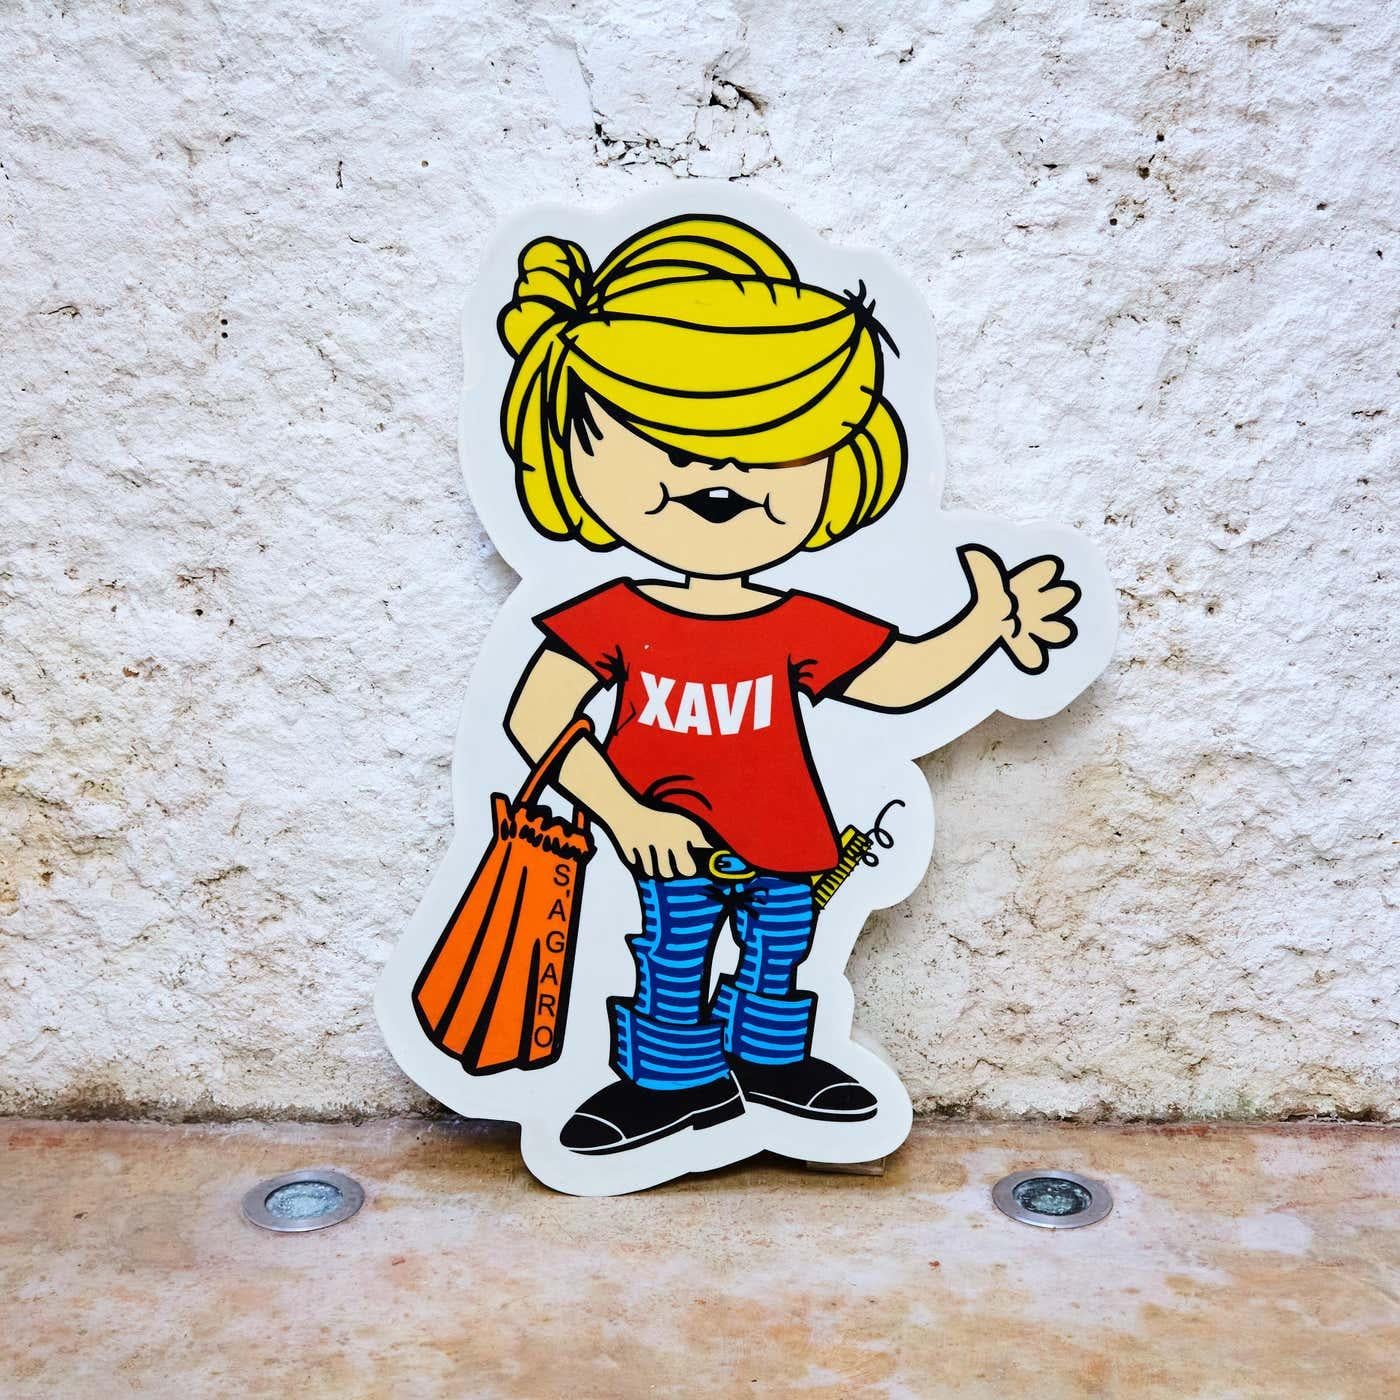 Supermarket Light Sign 'Xavi S'agaro', circa 1970 For Sale 5